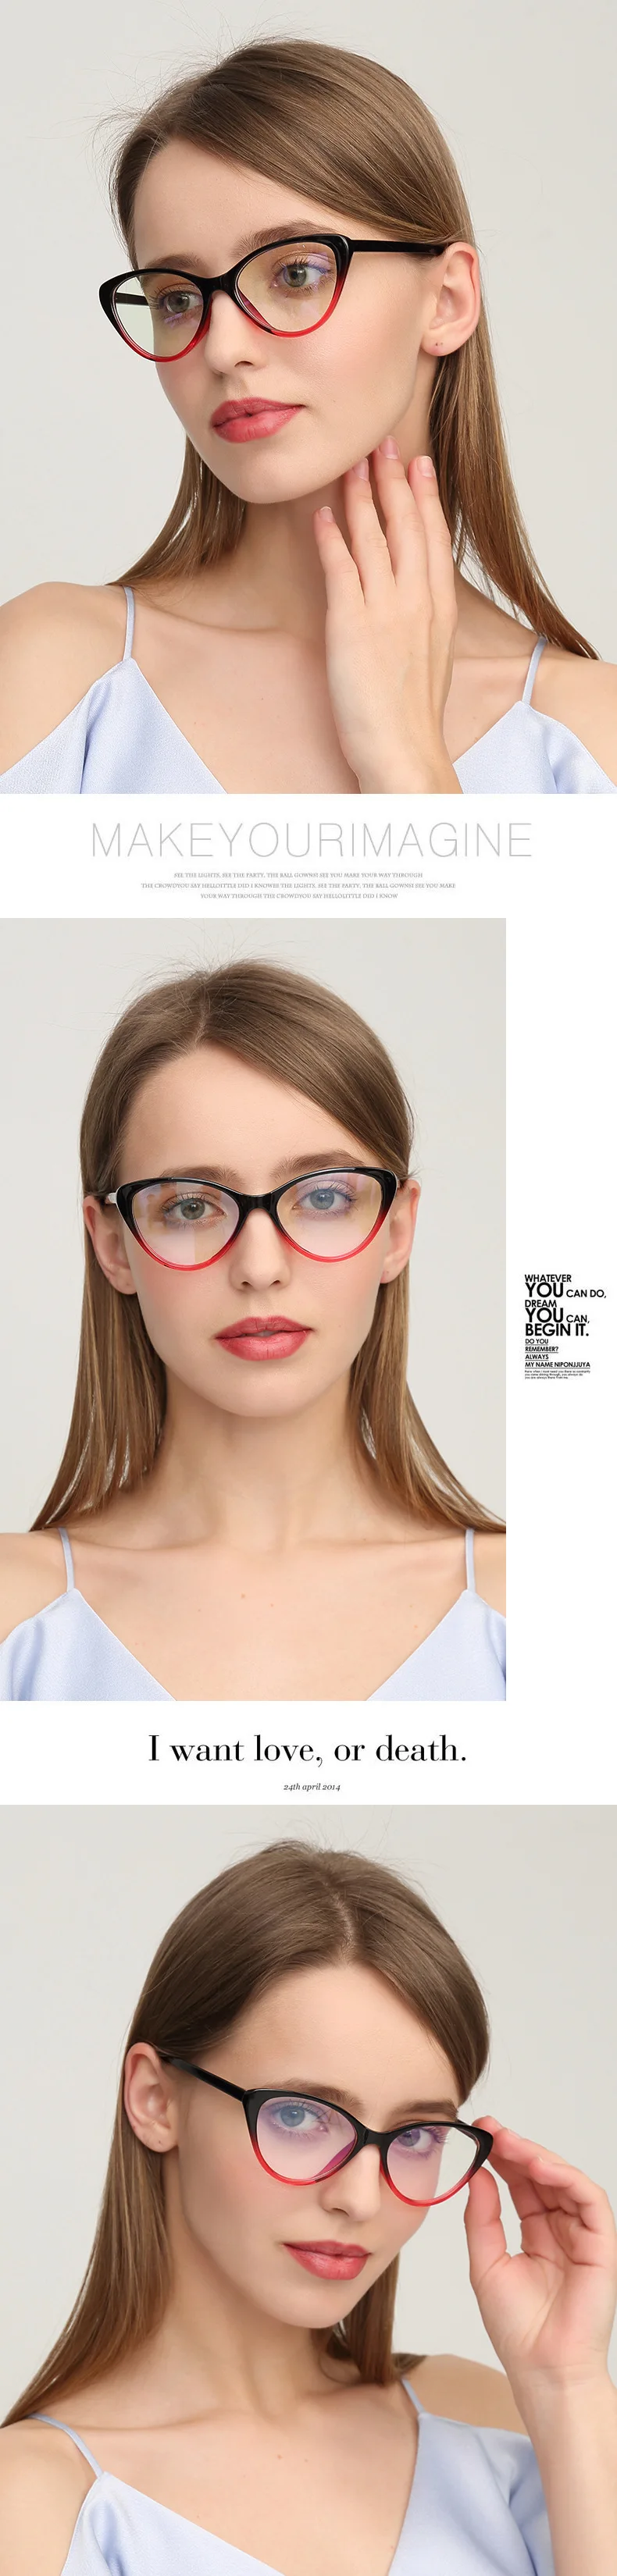 Brightzone 8 цветов винтажные прозрачные компьютерные поддельные очки для женщин оправа «кошачий глаз» близорукость очки модные цветочные очки